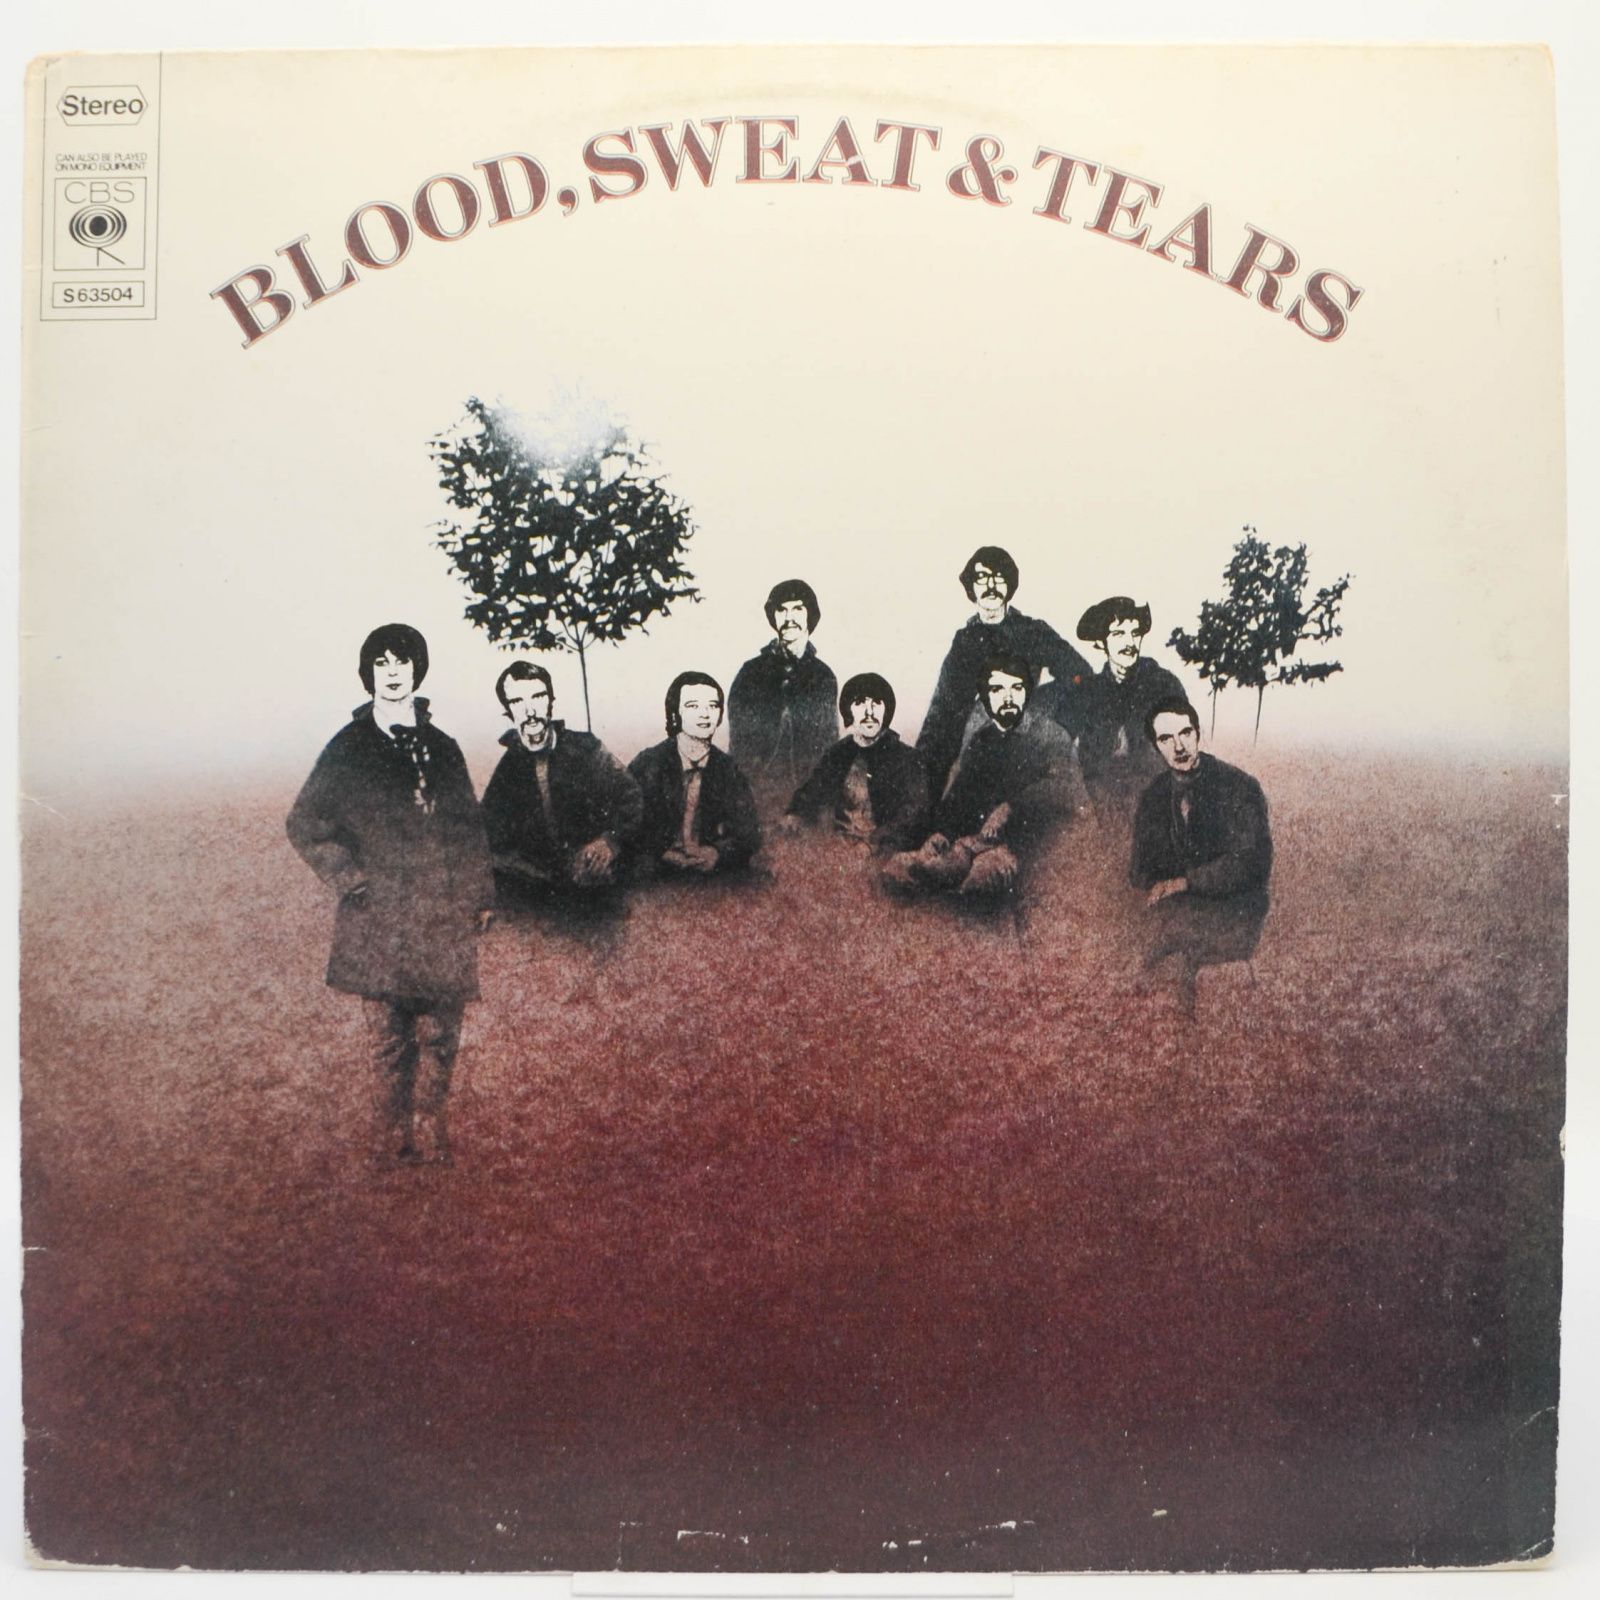 Blood, Sweat And Tears — Blood, Sweat And Tears, 1969